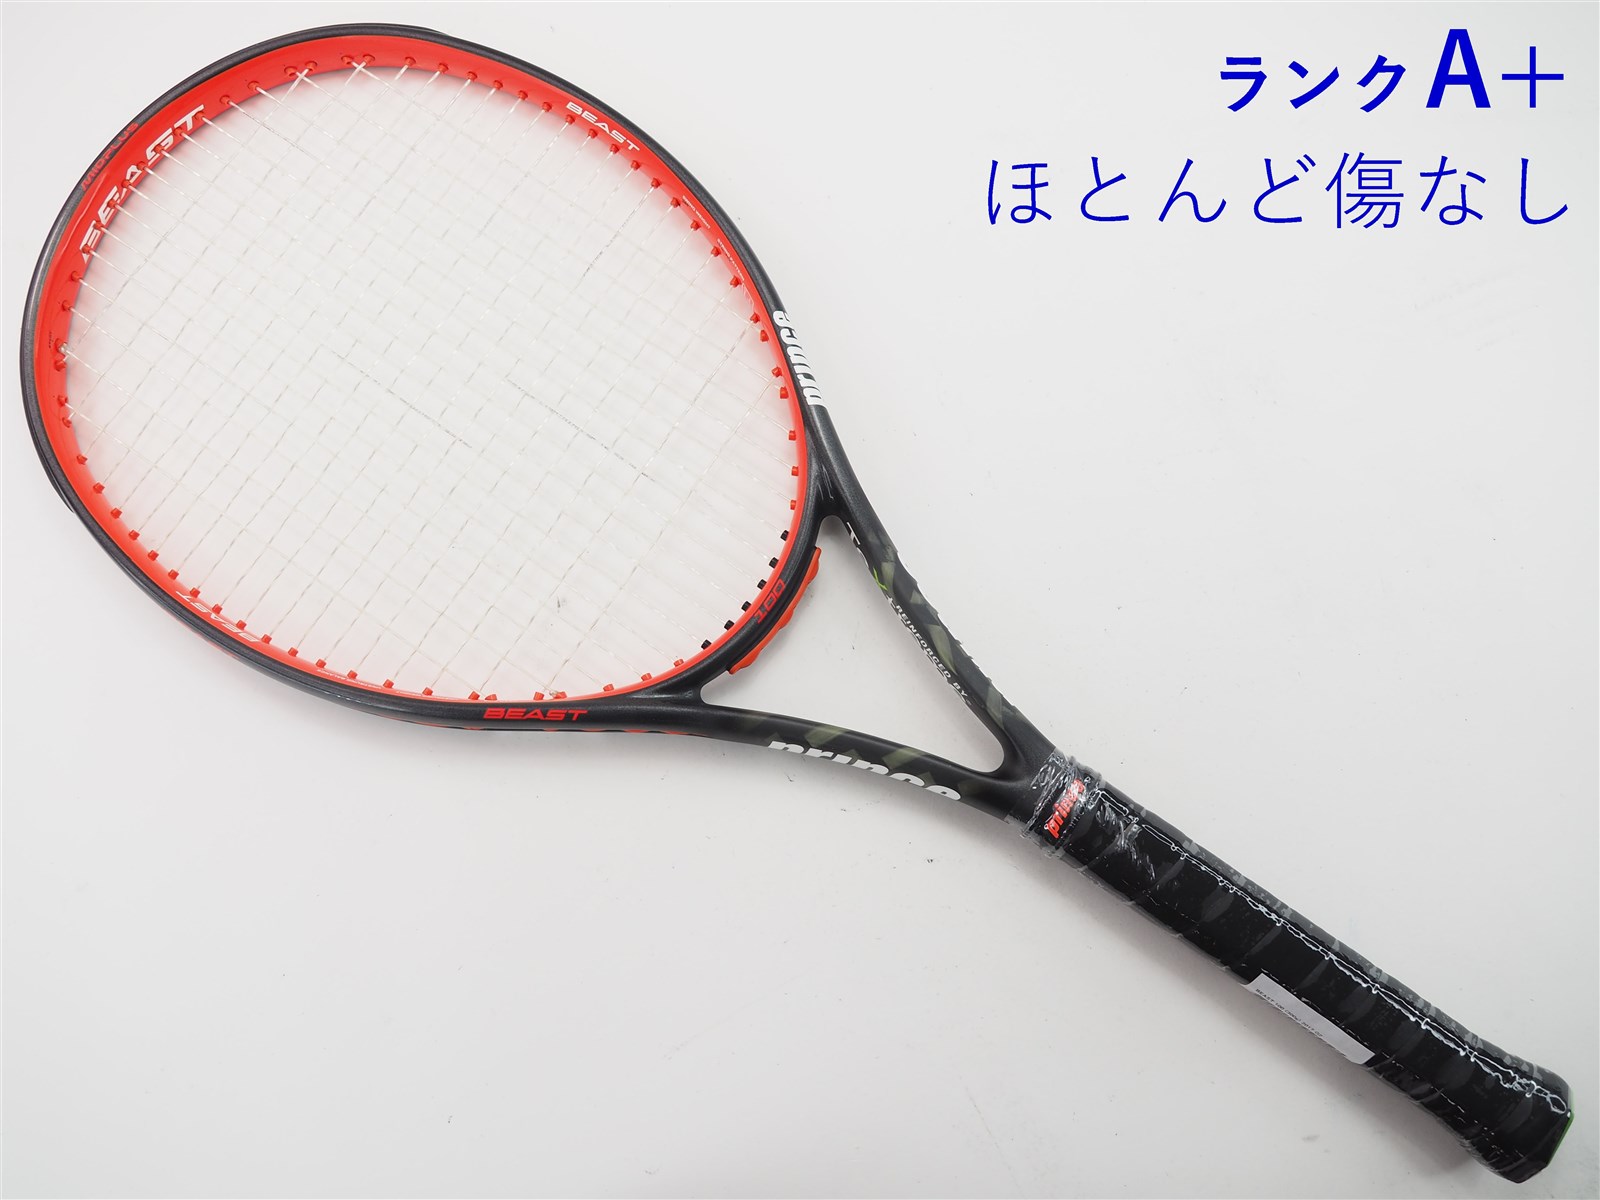 発売モデル PRINCE 2017モデル ビースト100 BEAST100 テニスラケット 硬式ラケット